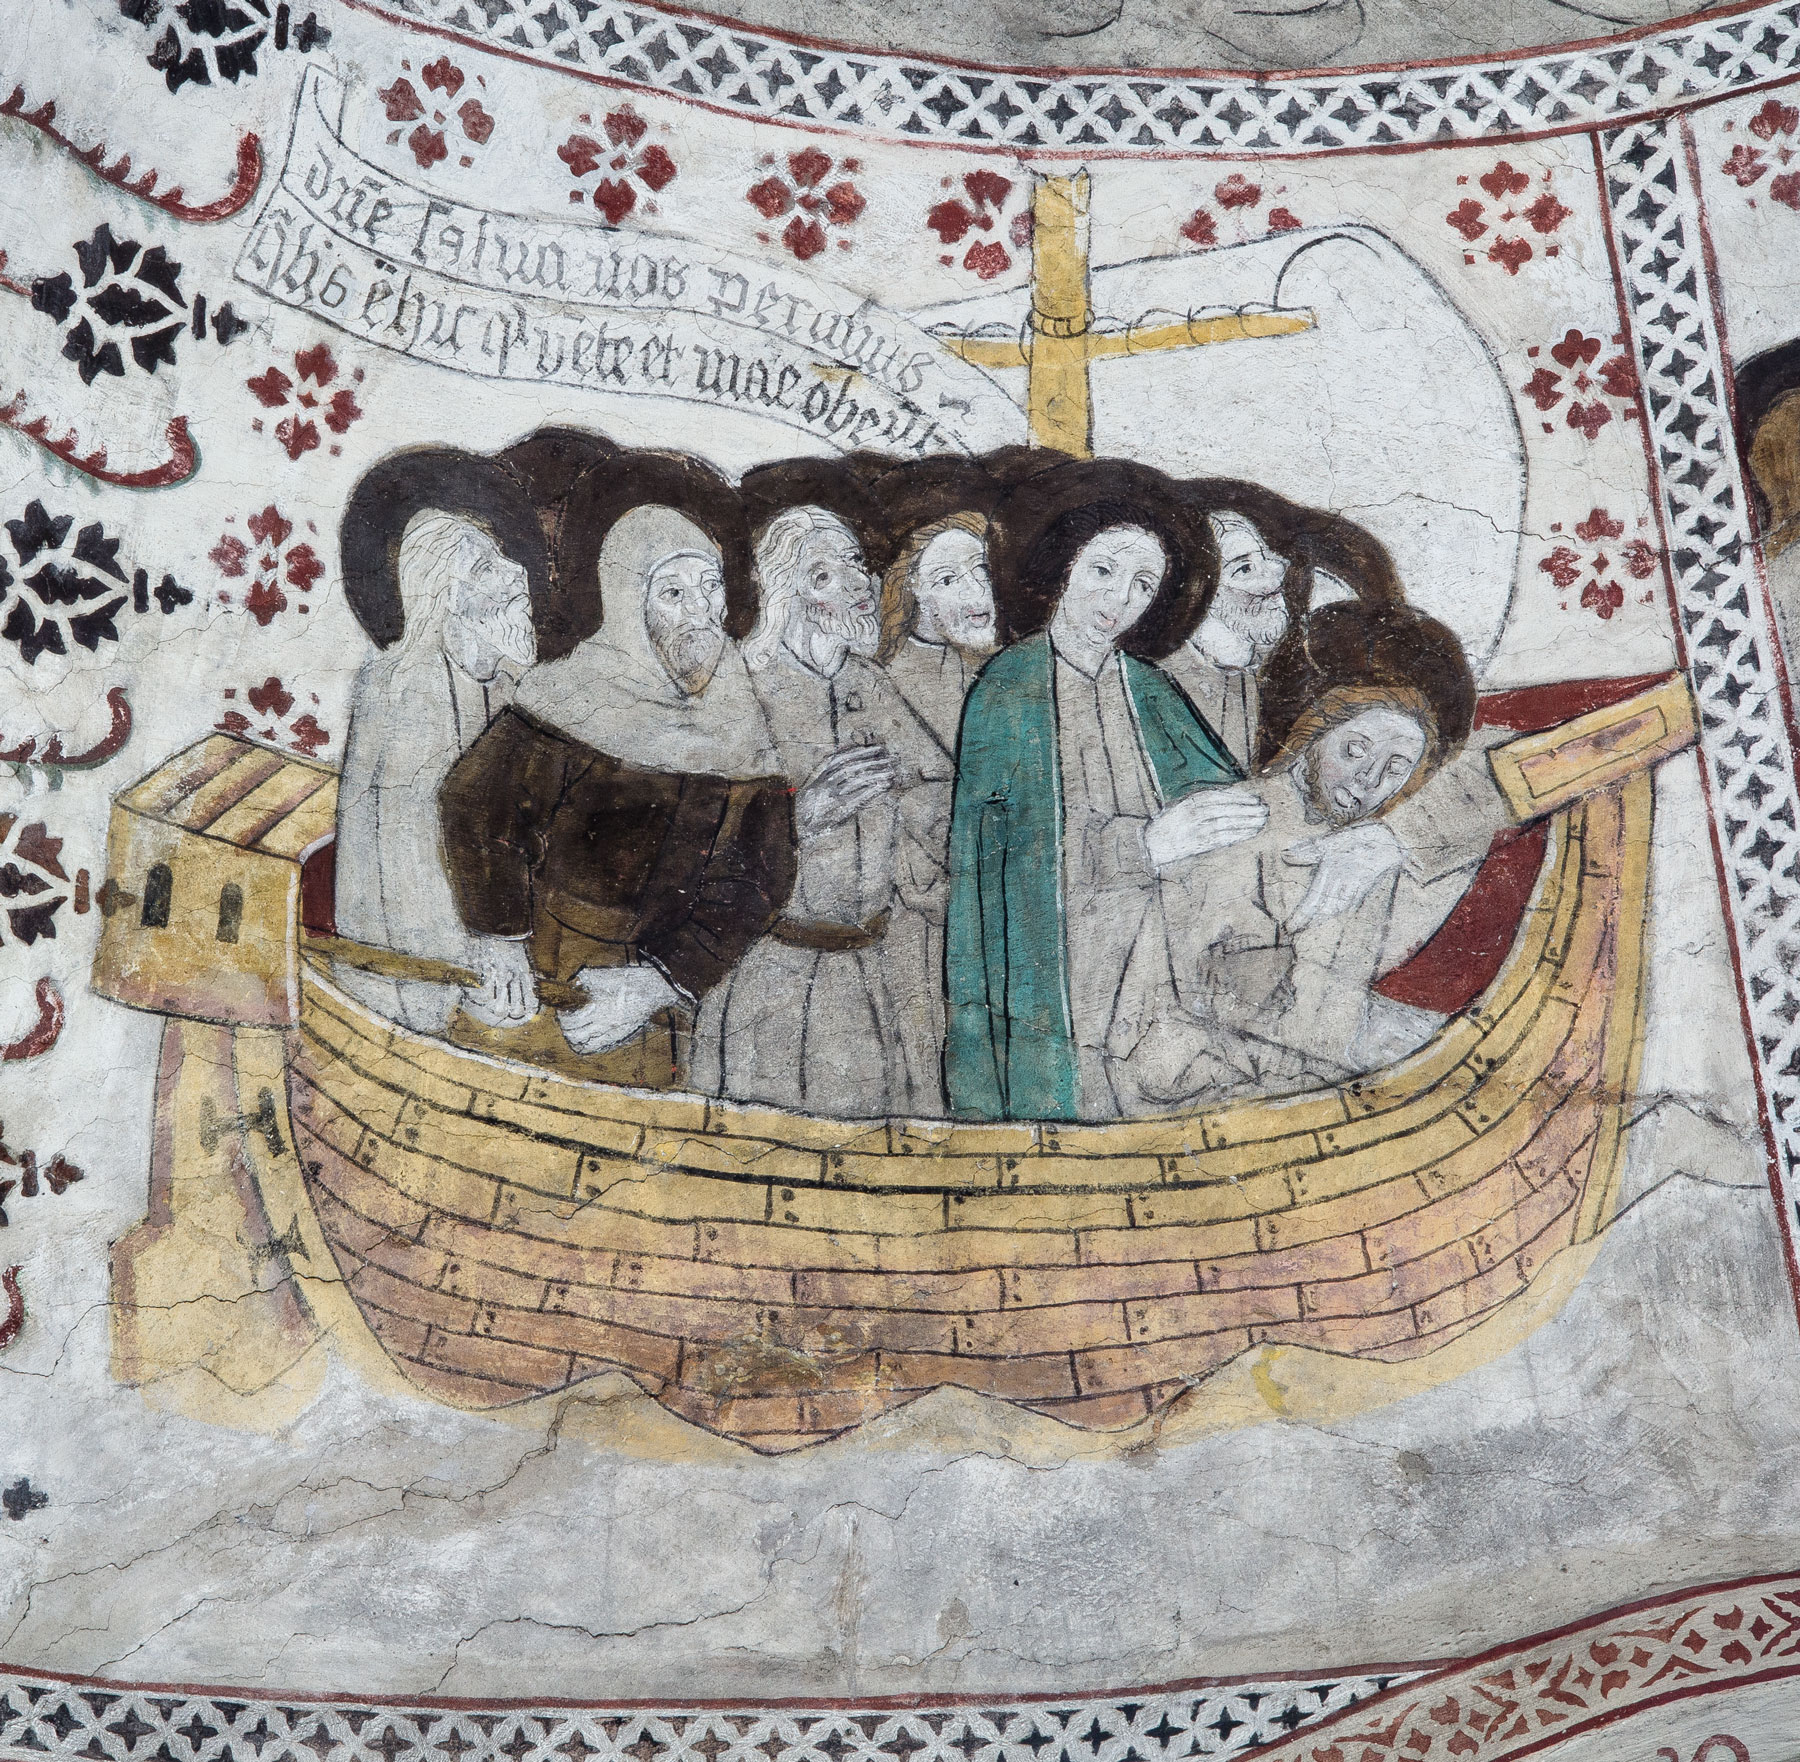 Jesus sover i skeppet under en storm (V) - Odensala kyrka